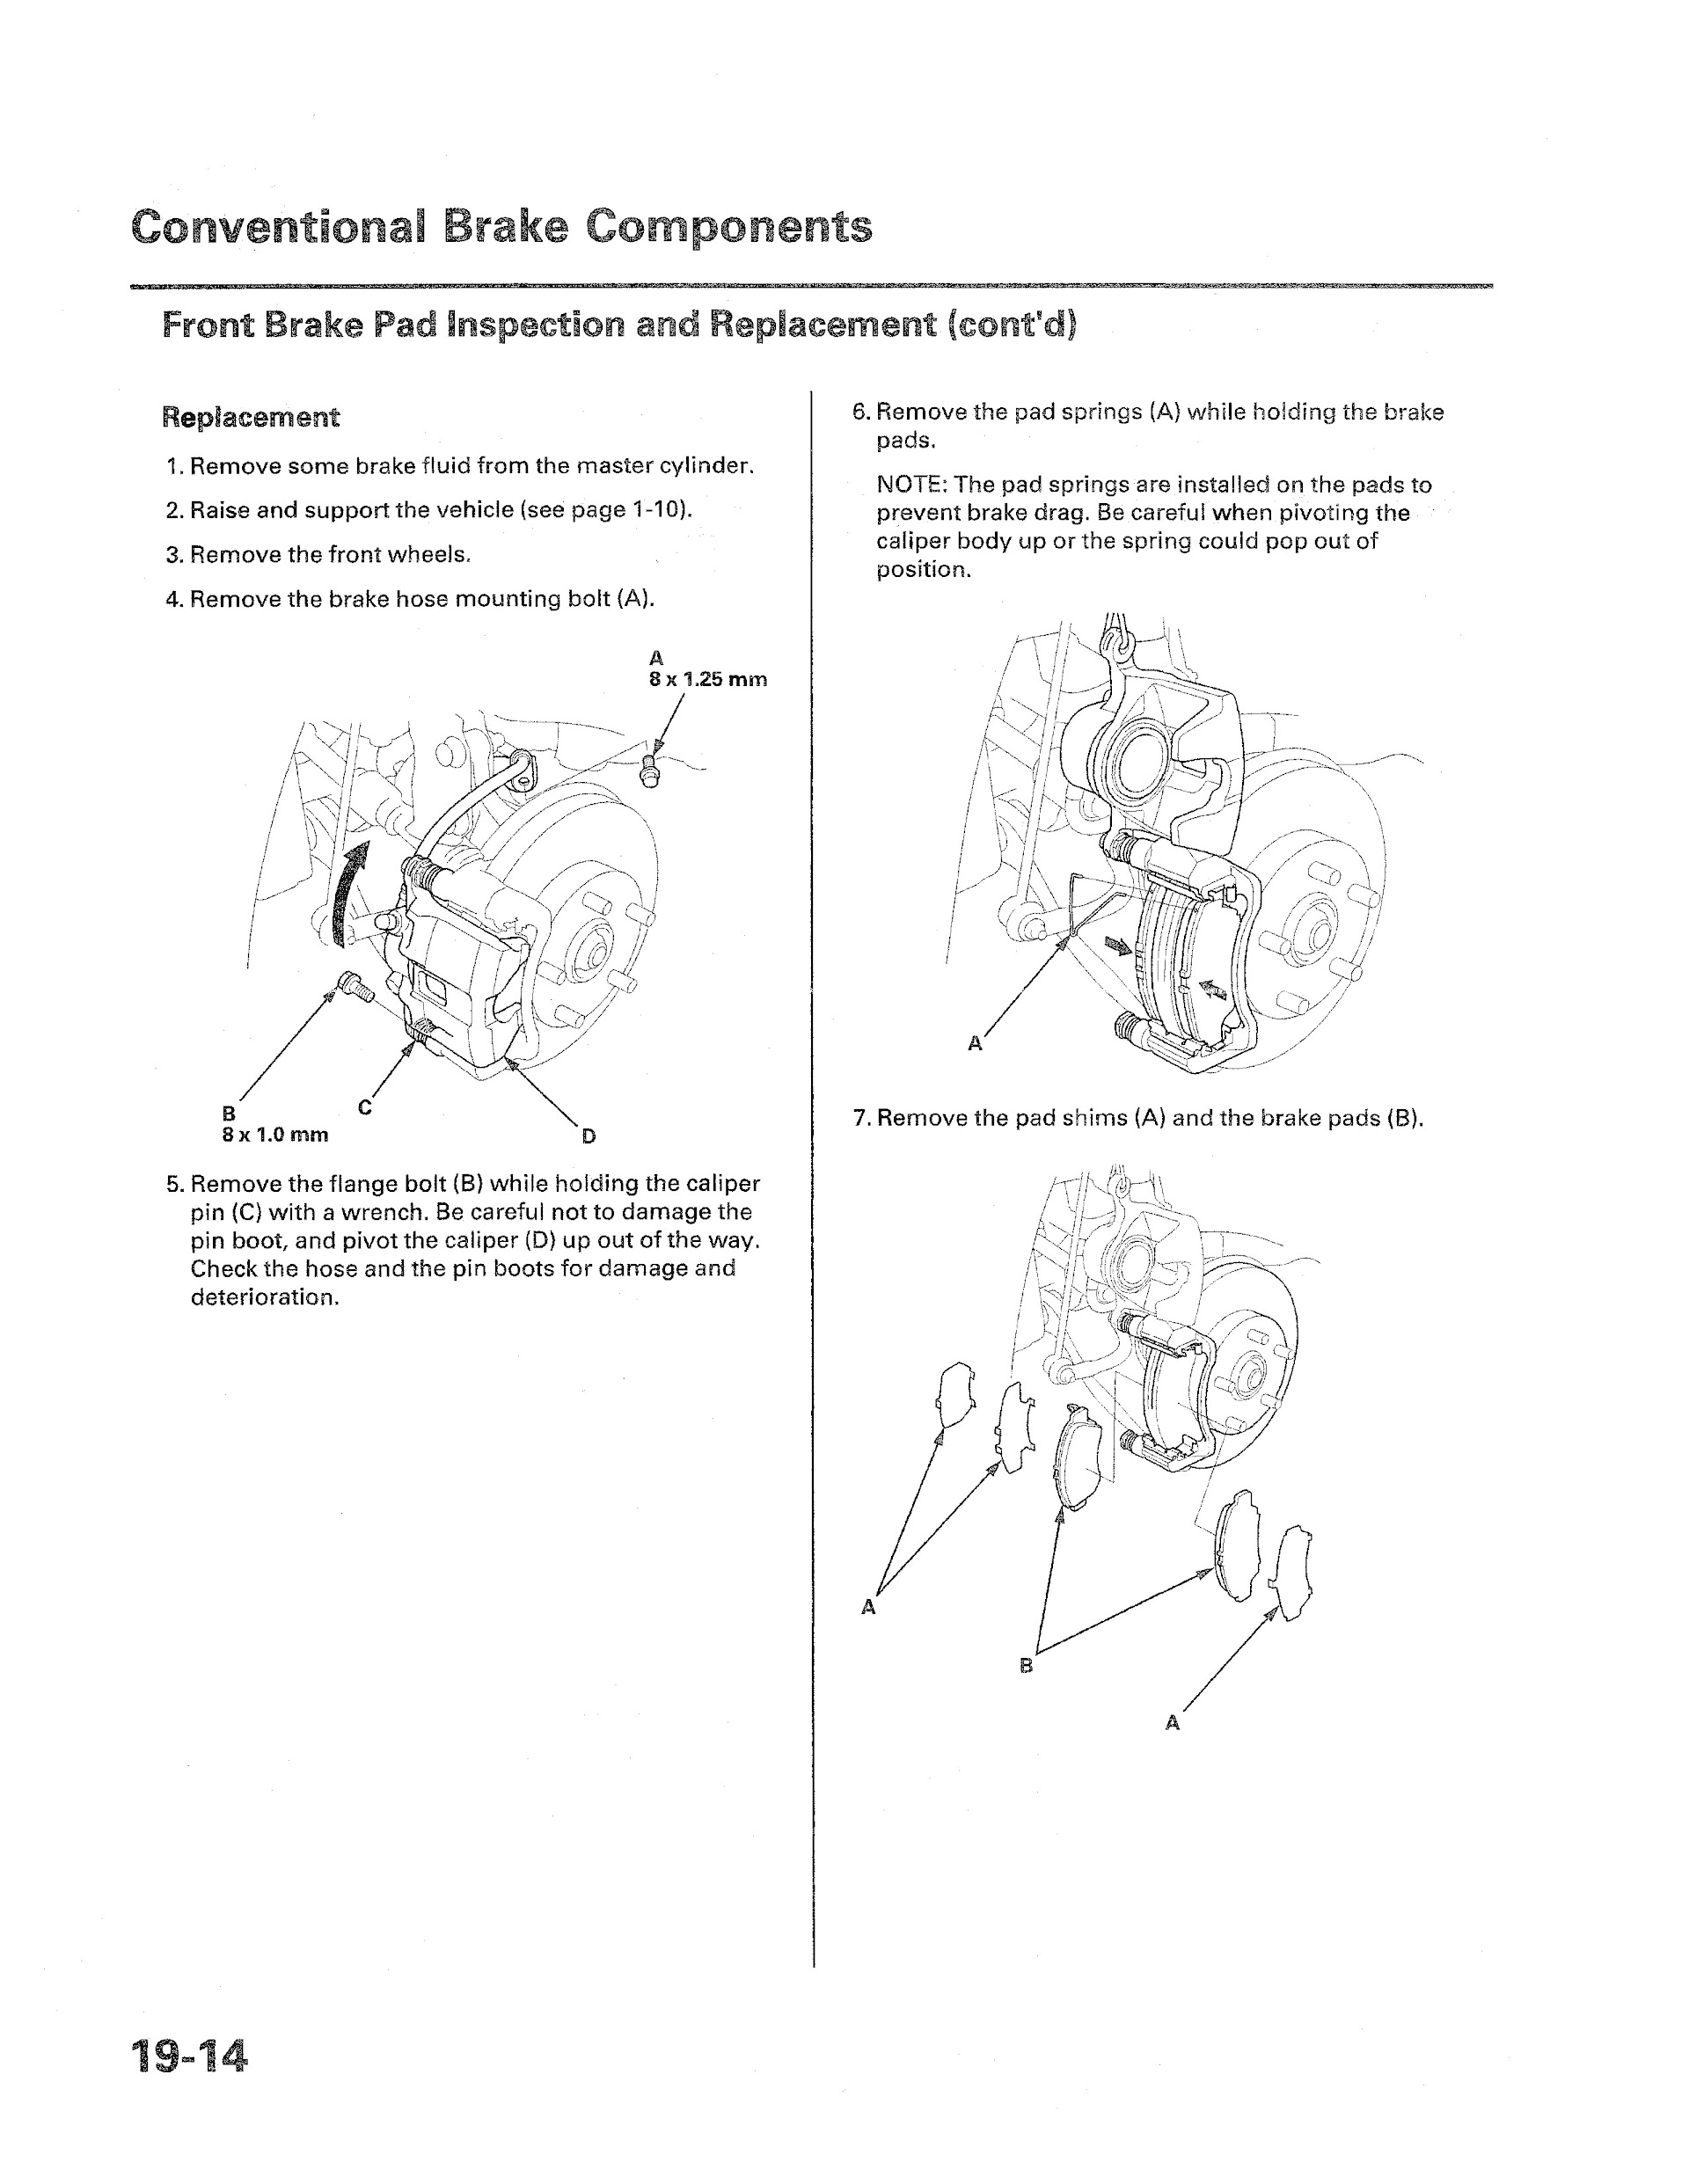 2010-2012 Honda Cr-Z Repair Manual, Conventional Brake Components. 